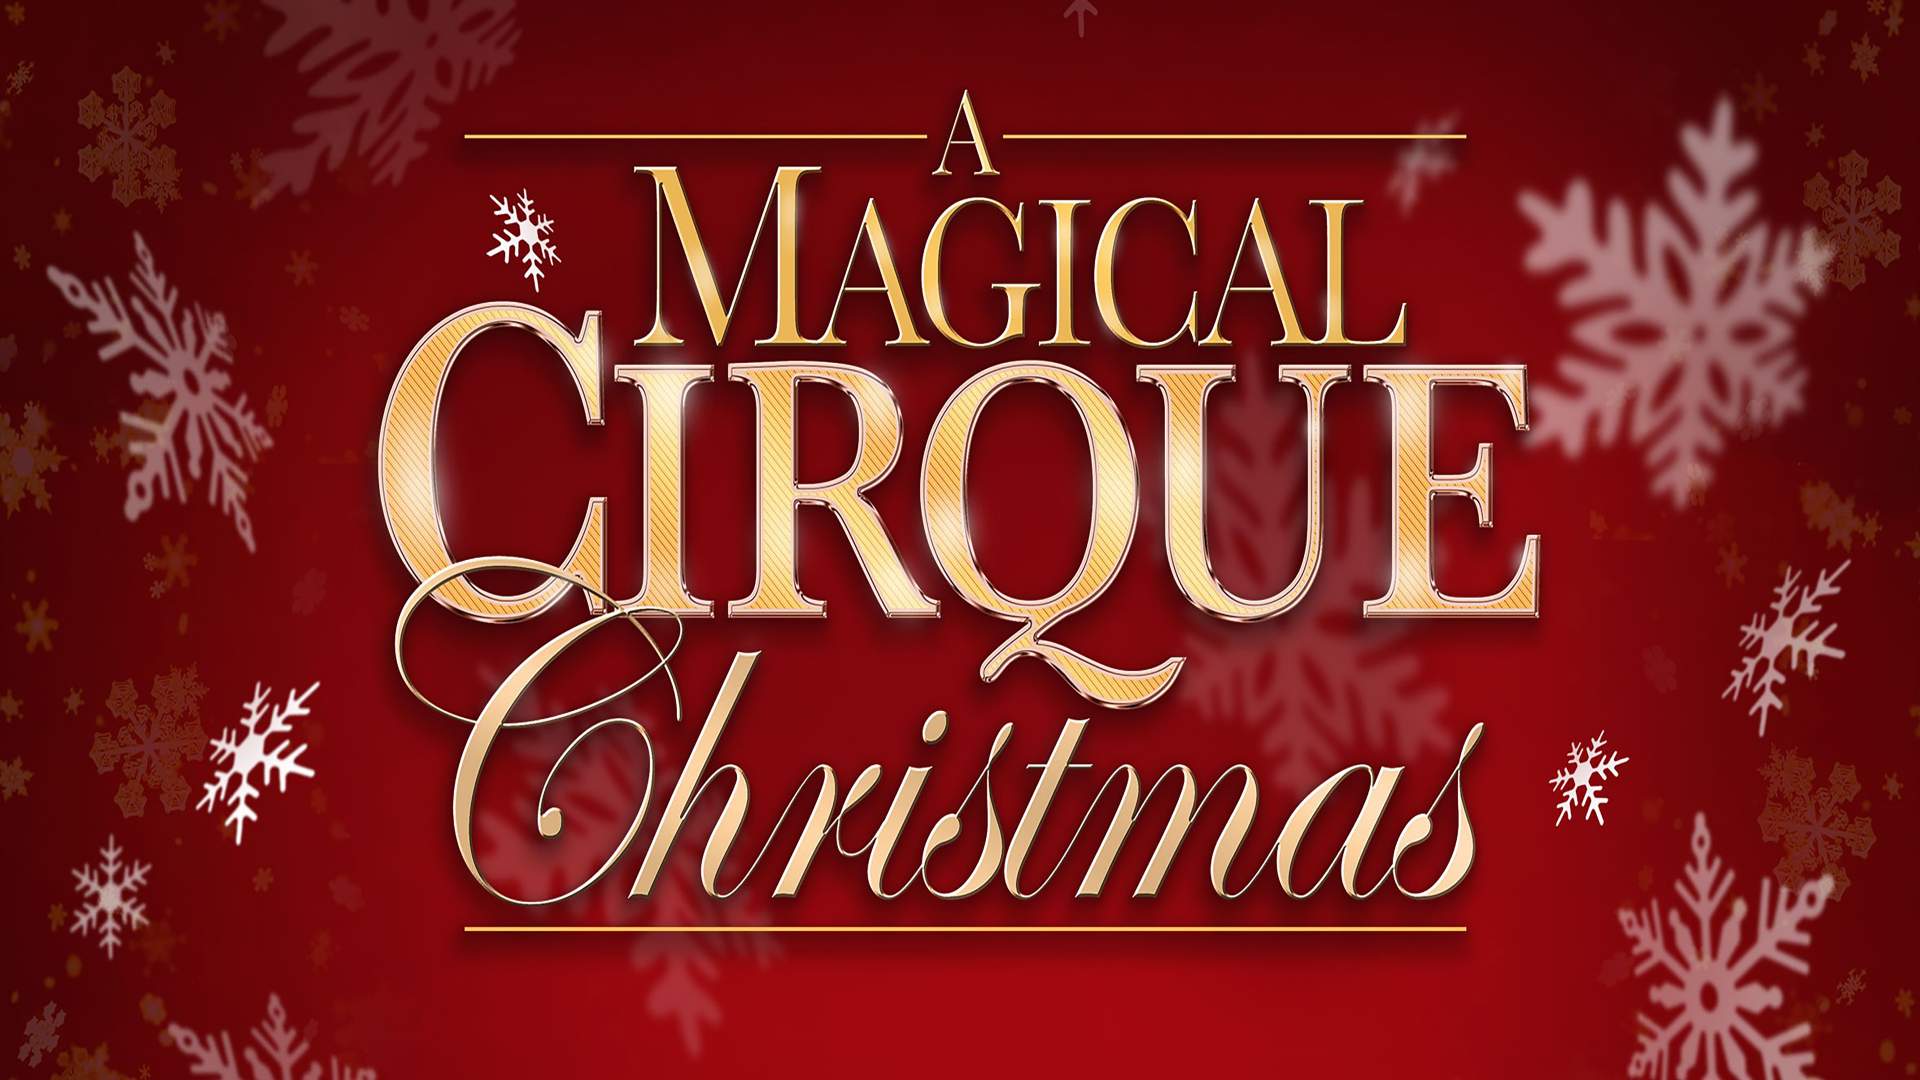 a magical cirque christmas cast